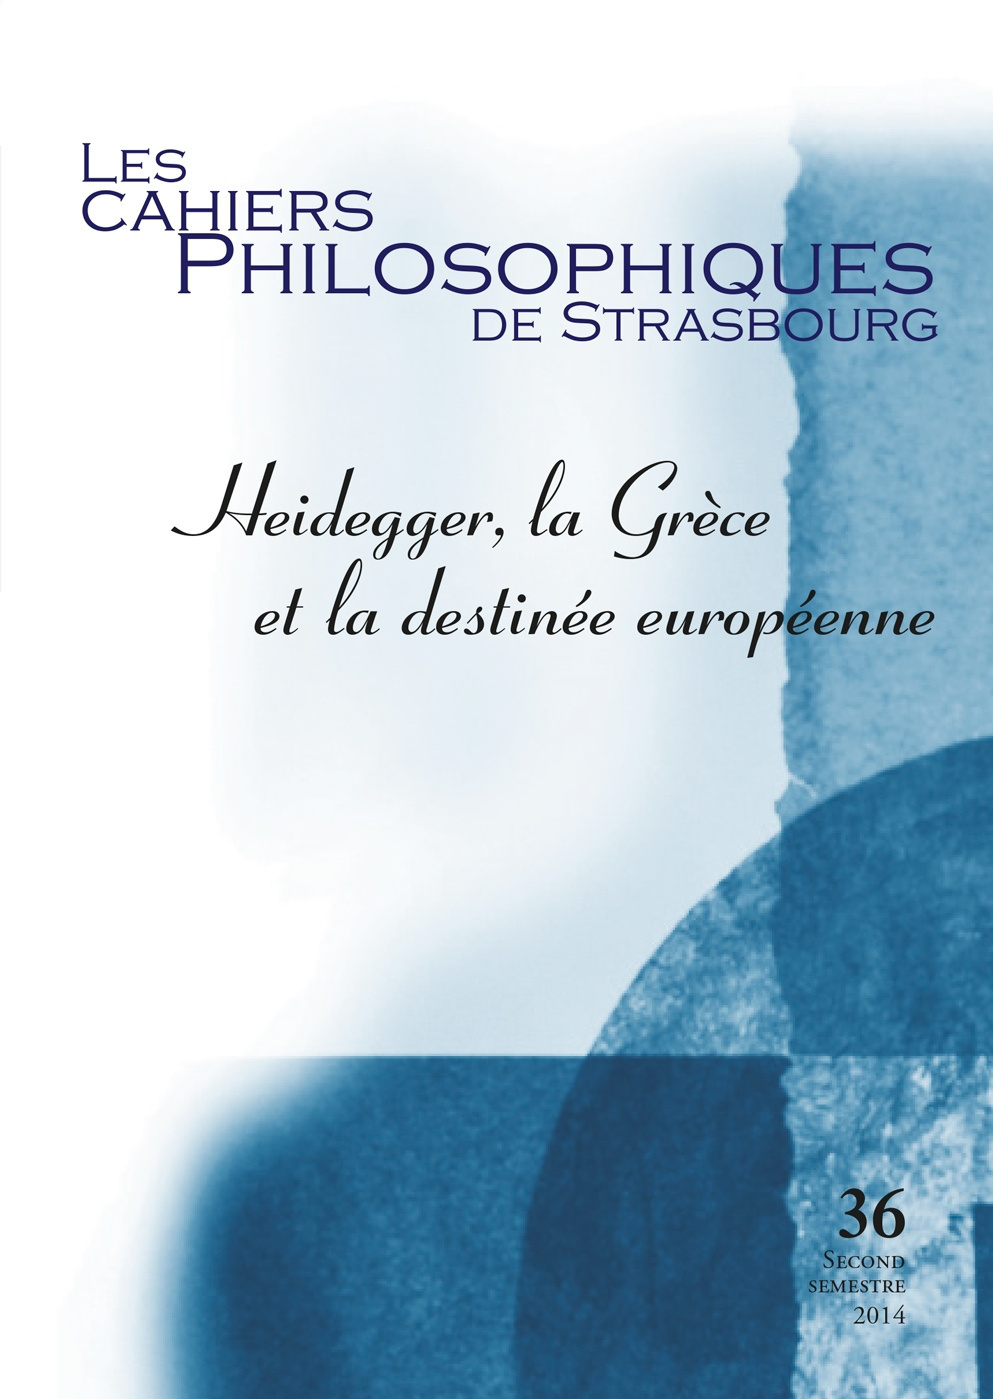 Les Cahiers philosophiques de Strasbourg n°36/2014